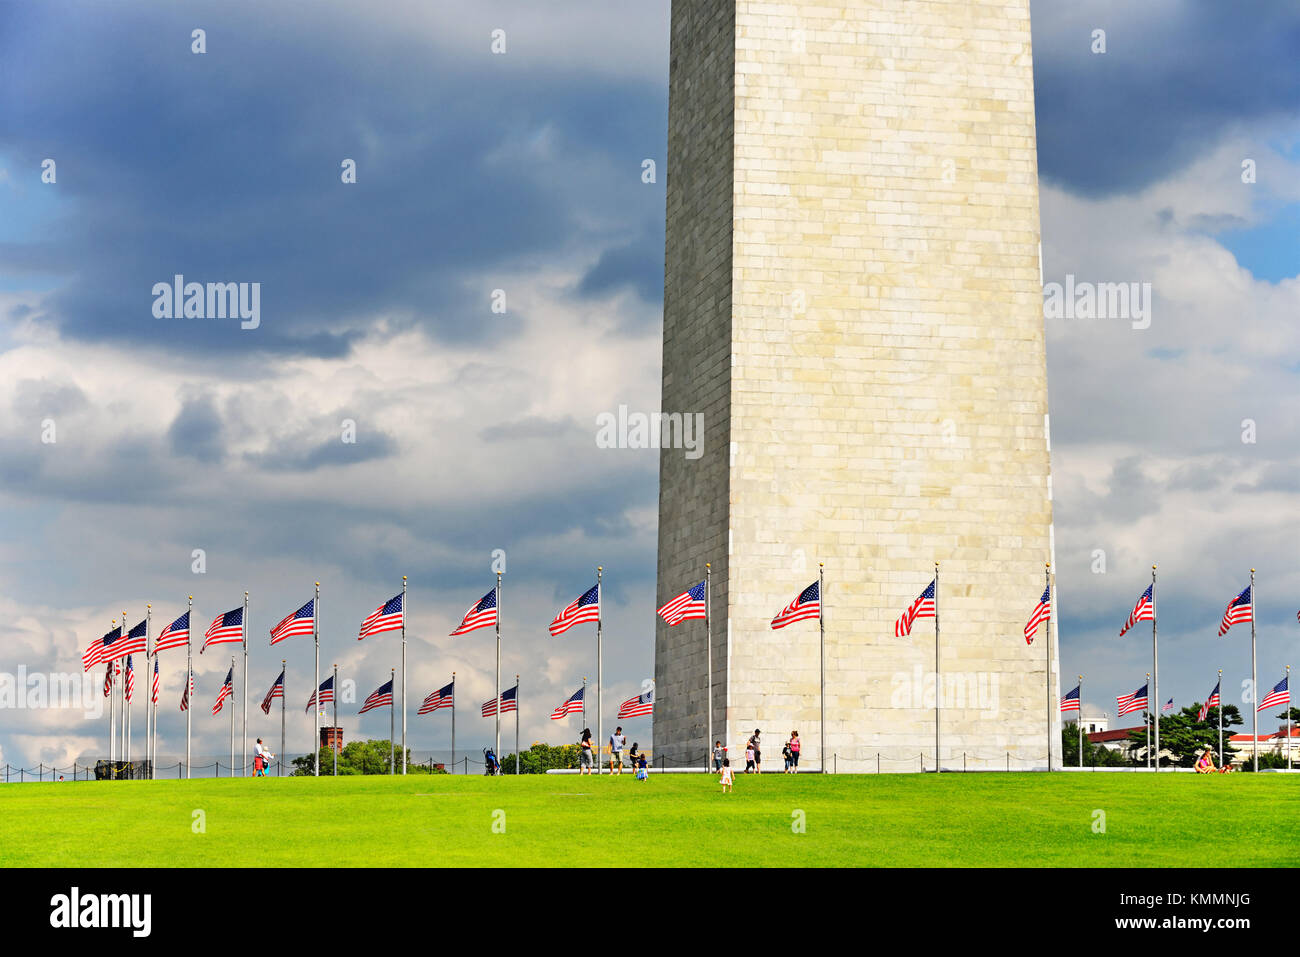 Detail von George Washington Monument, in Washington, DC, Hervorhebung der massive Ausmaße des Obelisken, der höchste Stein Struktur in der Welt. Stockfoto